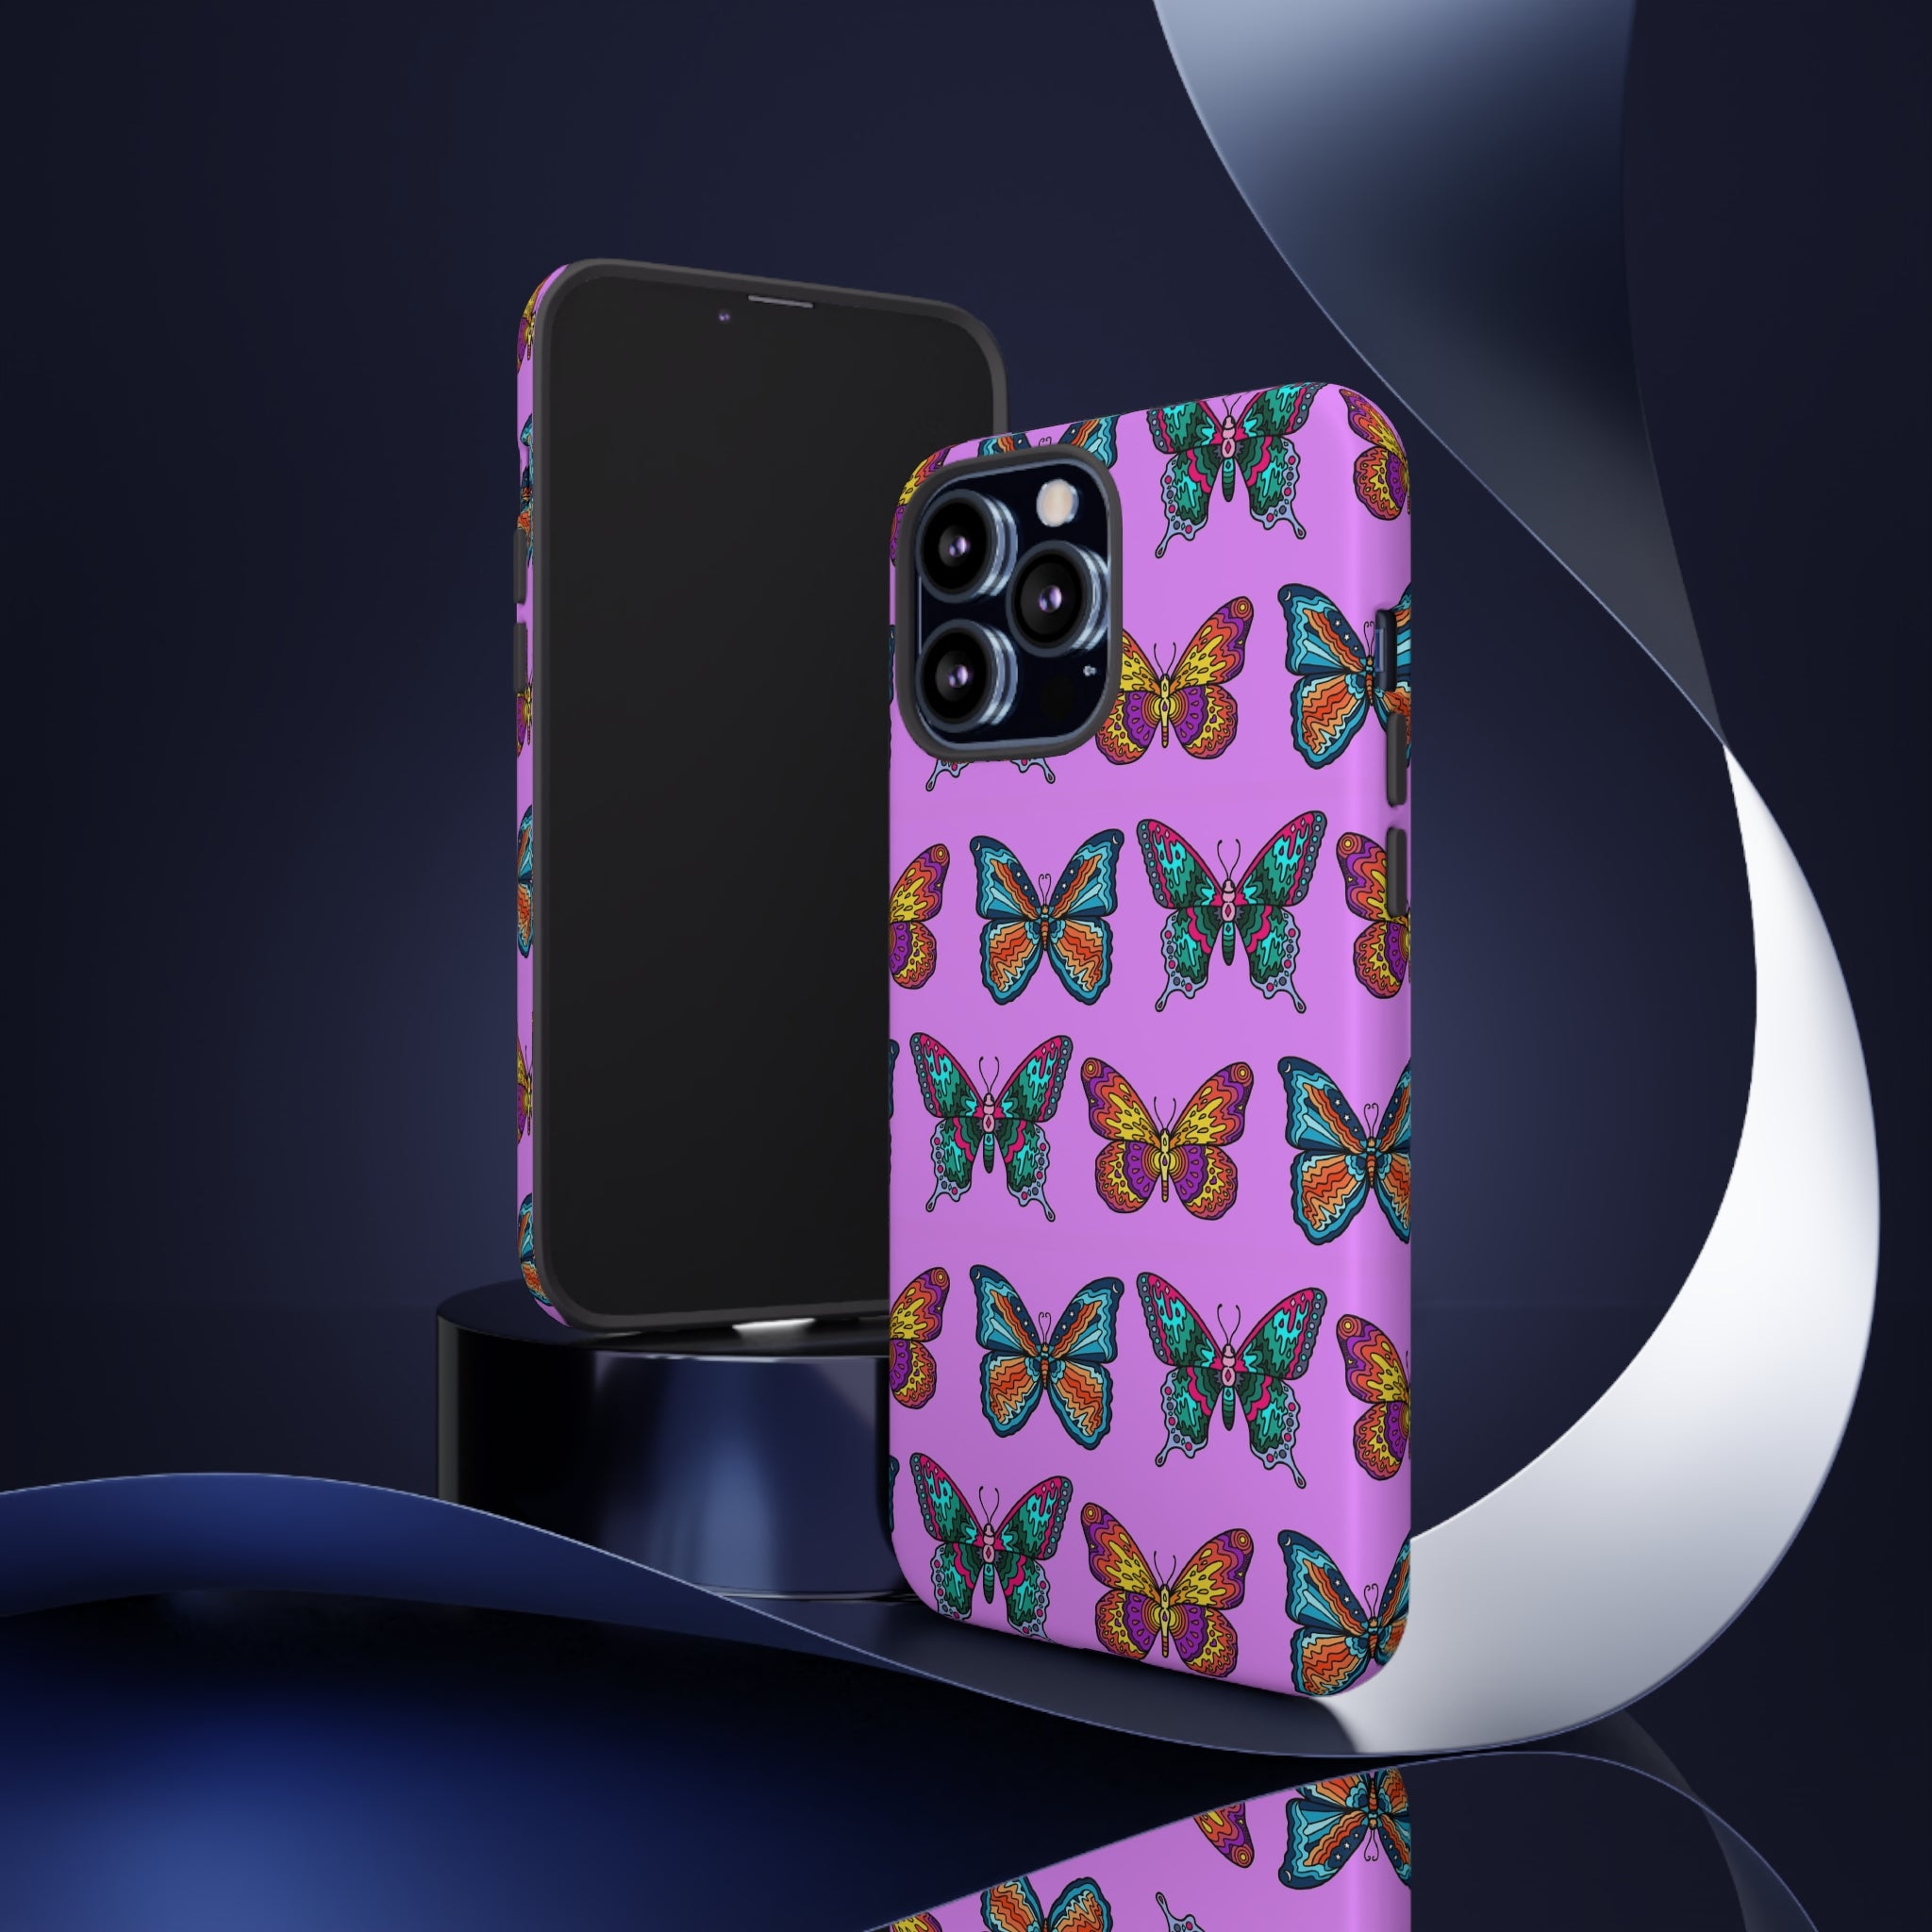 Mosaic Butterflies Phone Case